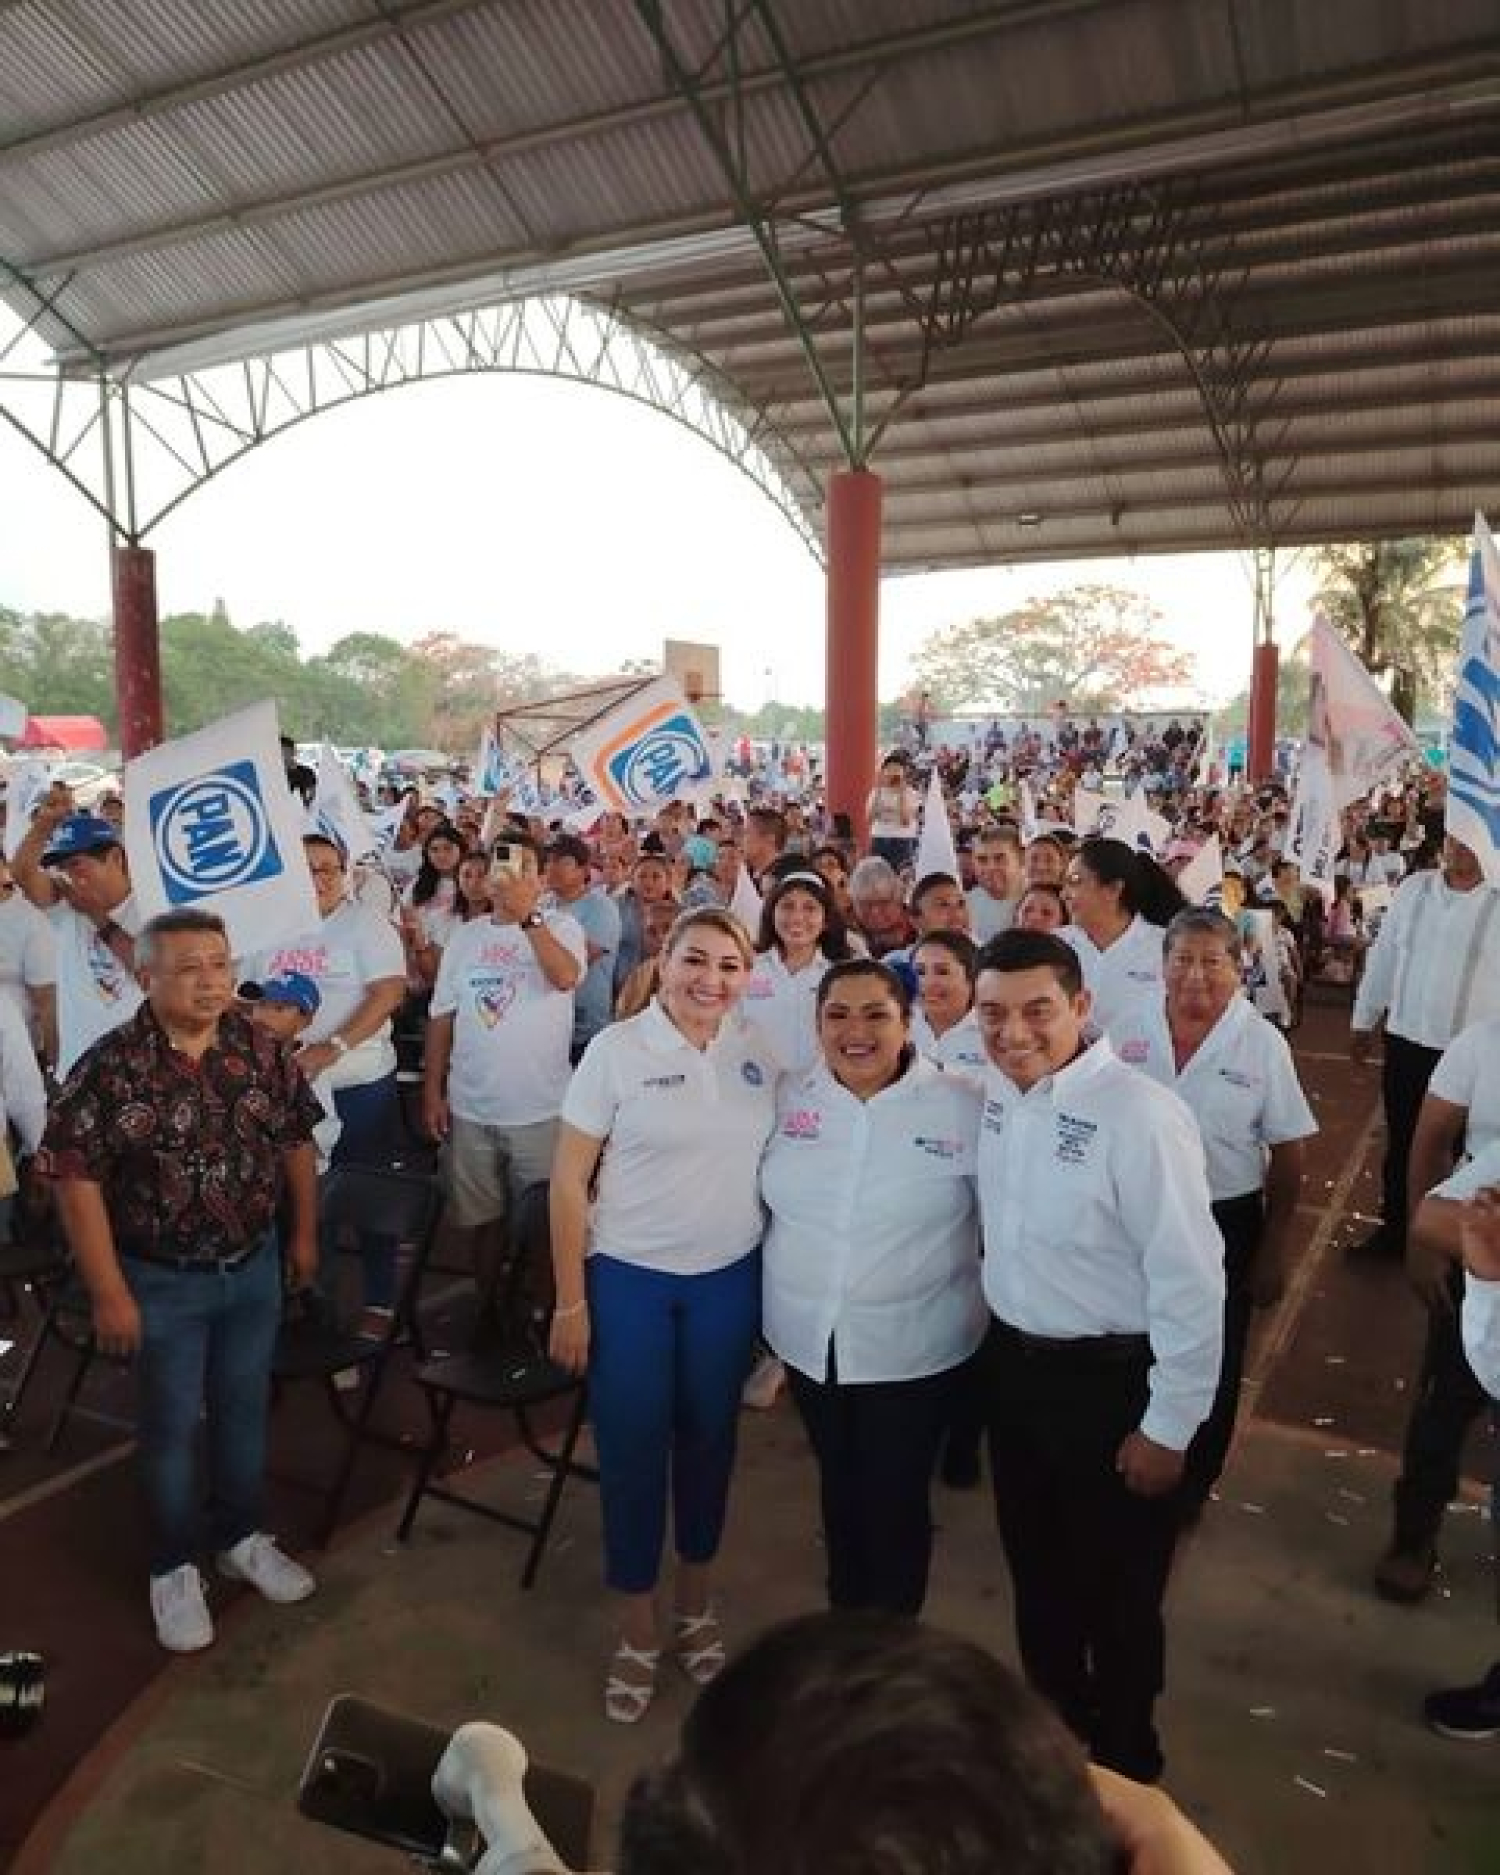 Este domingo vamos a votar sin miedo por el futuro de Quintana Roo: José Alberto “Beto” Quian